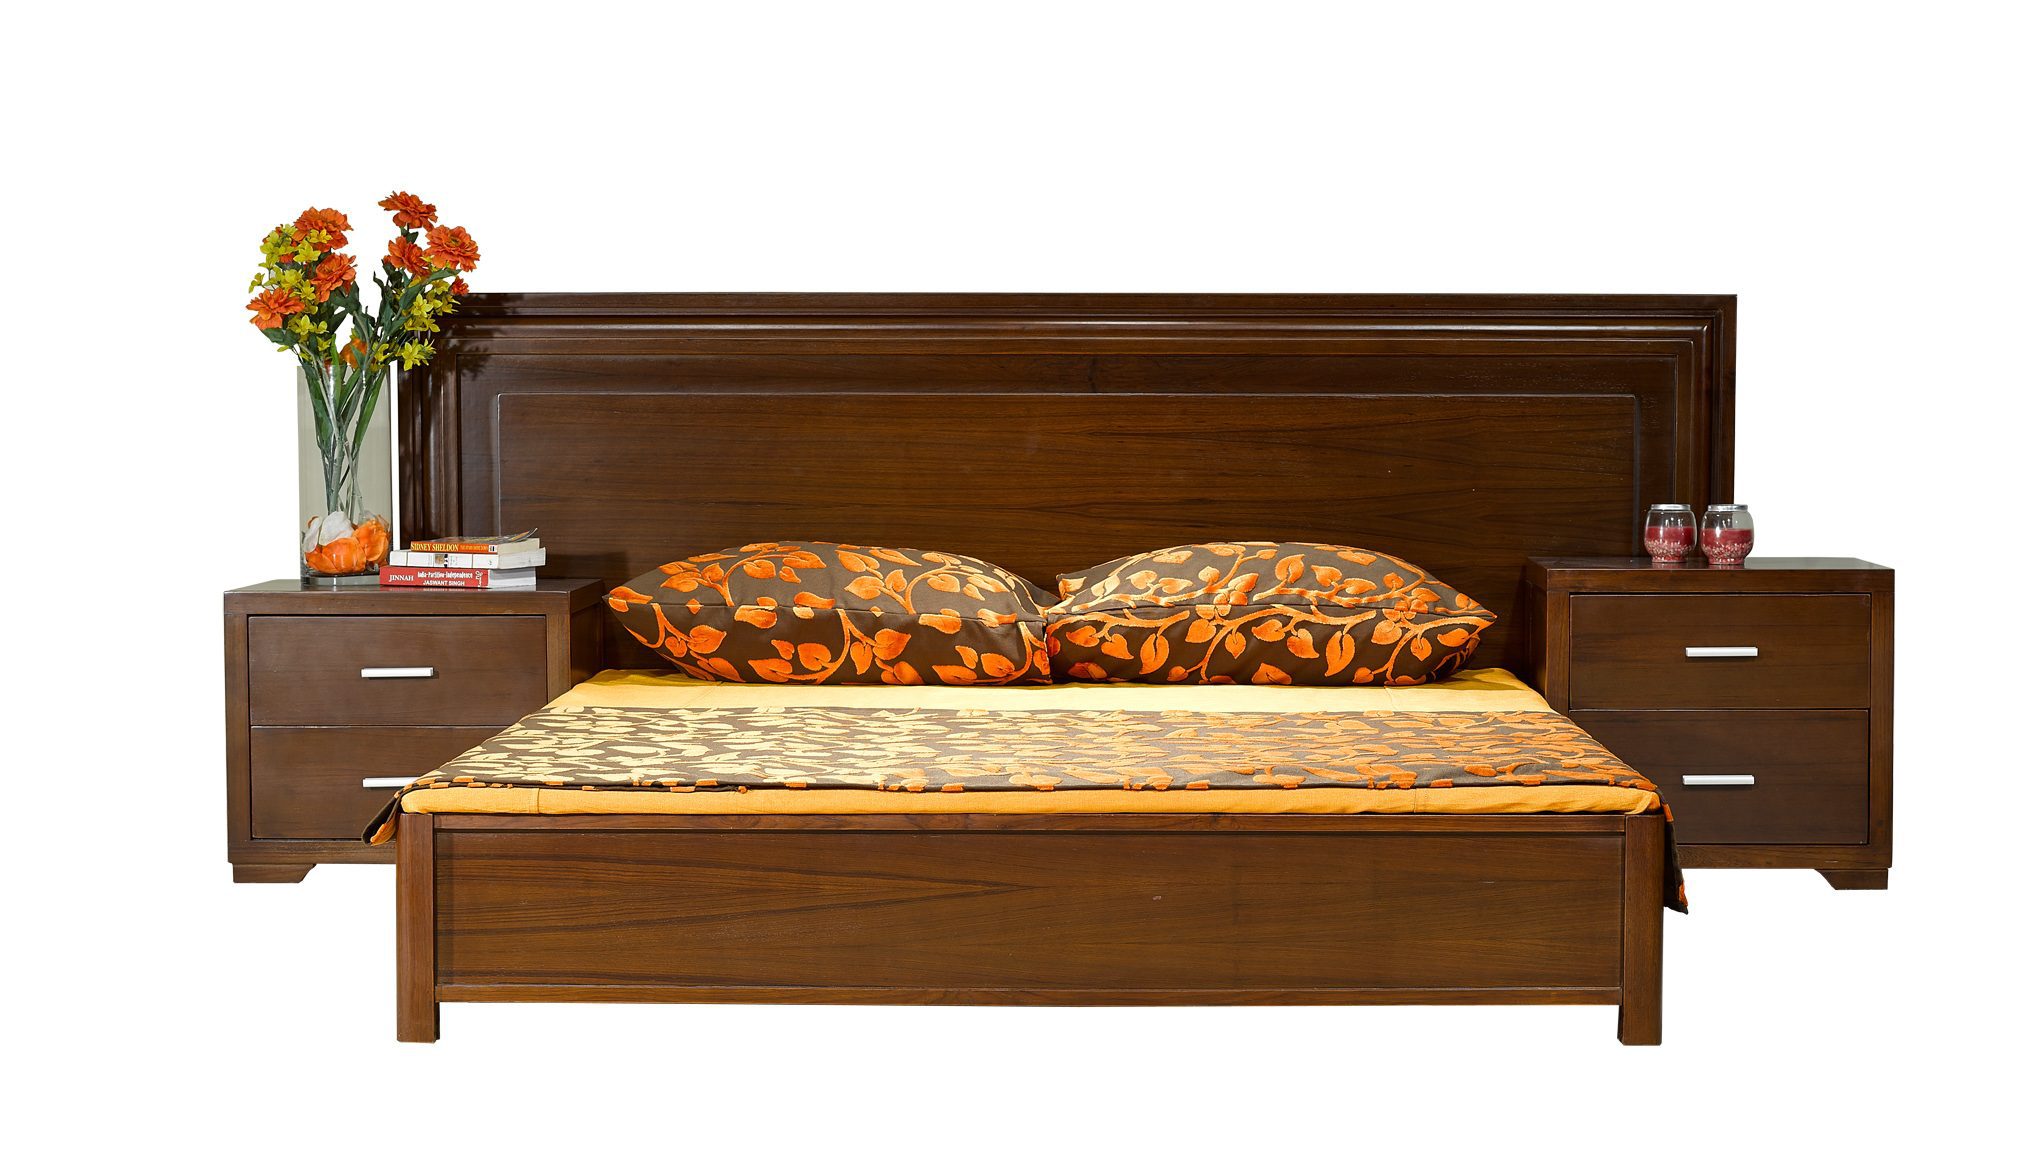 partex bedroom furniture set